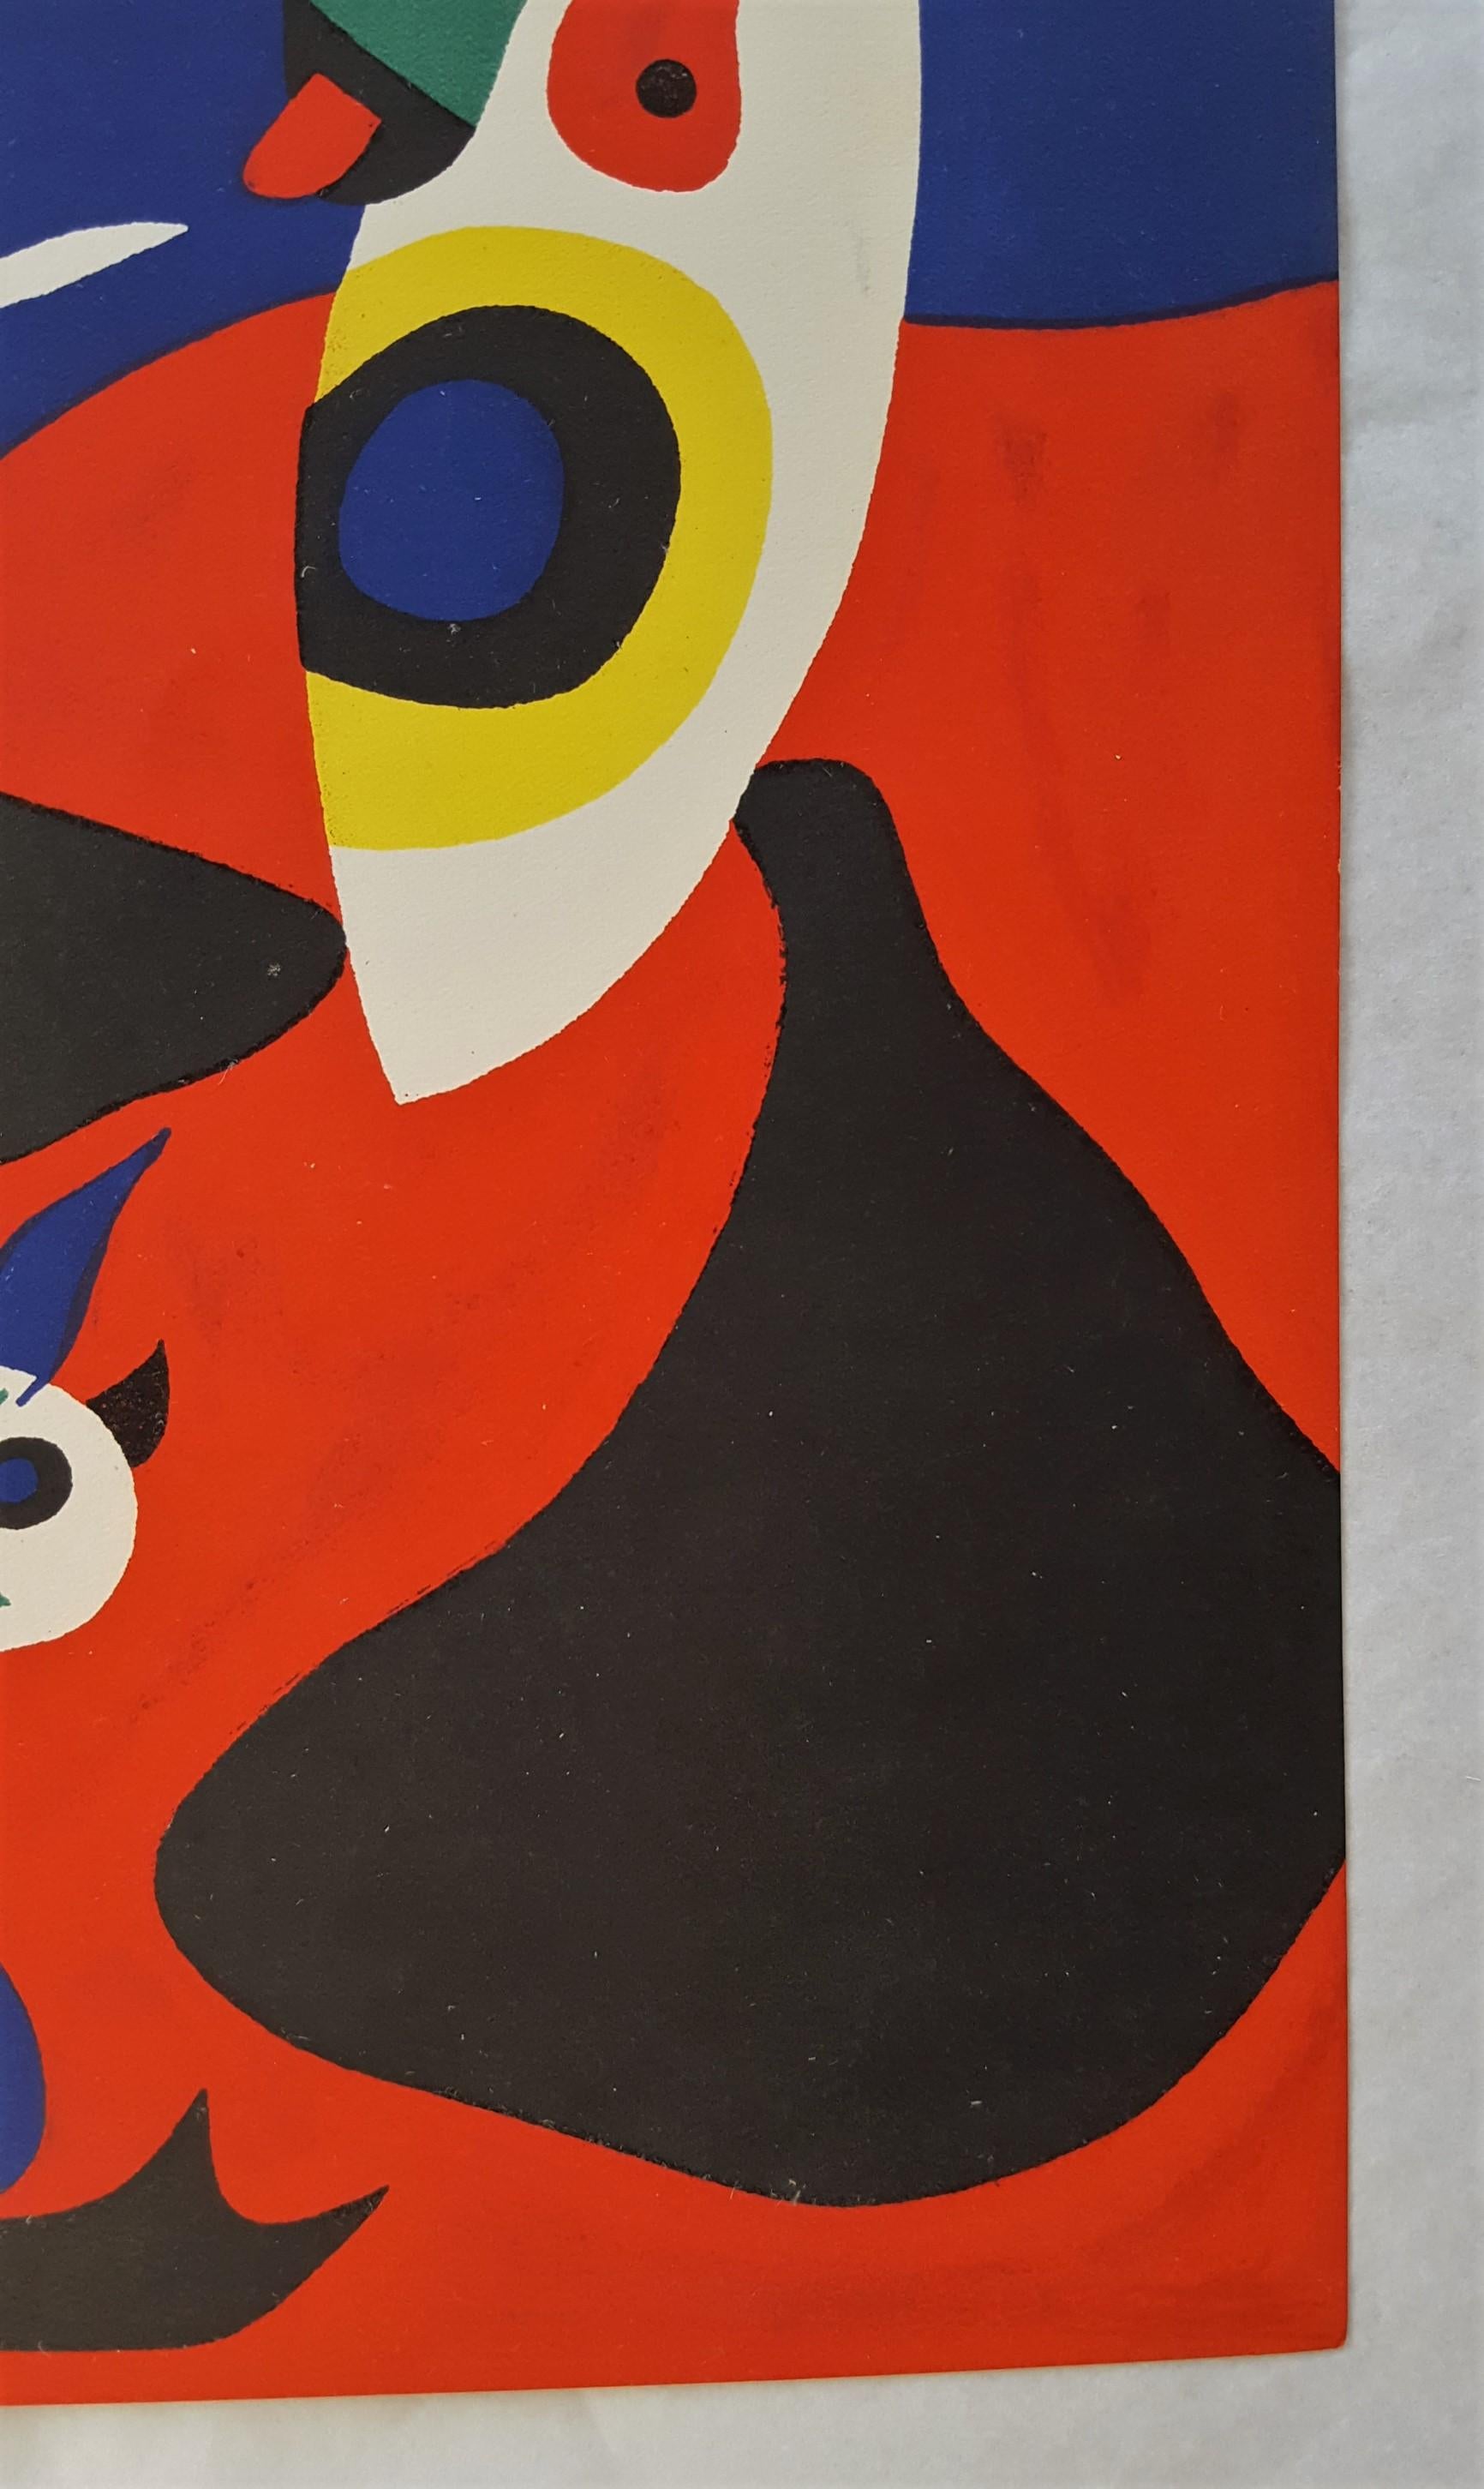 Ein Original-Pochoir (Schablone:: ähnlich Siebdruck) auf Velin nach dem spanischen Künstler Joan Miro (1893-1983) mit dem Titel 